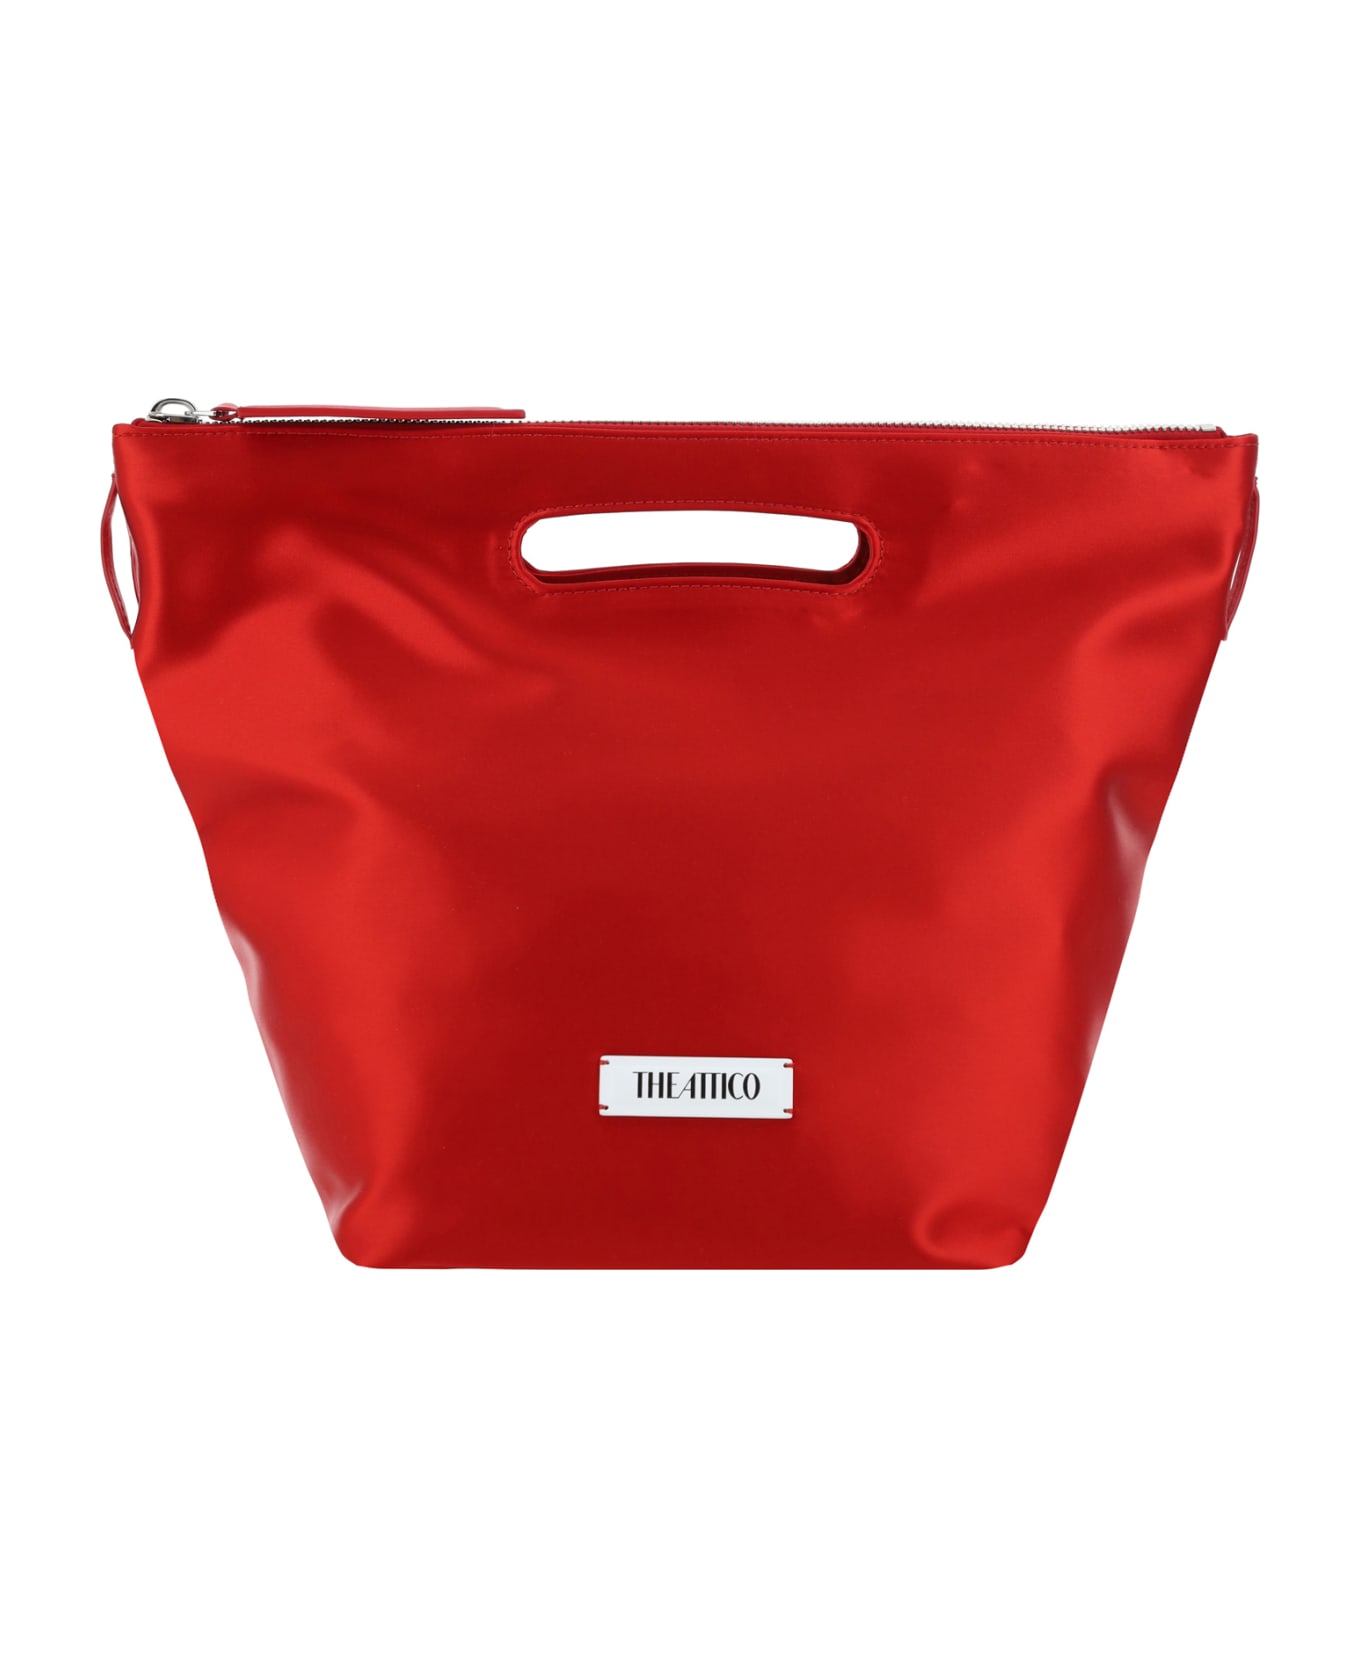 The Attico Via Dei Giardini 30 Handbag - Vibrant Red